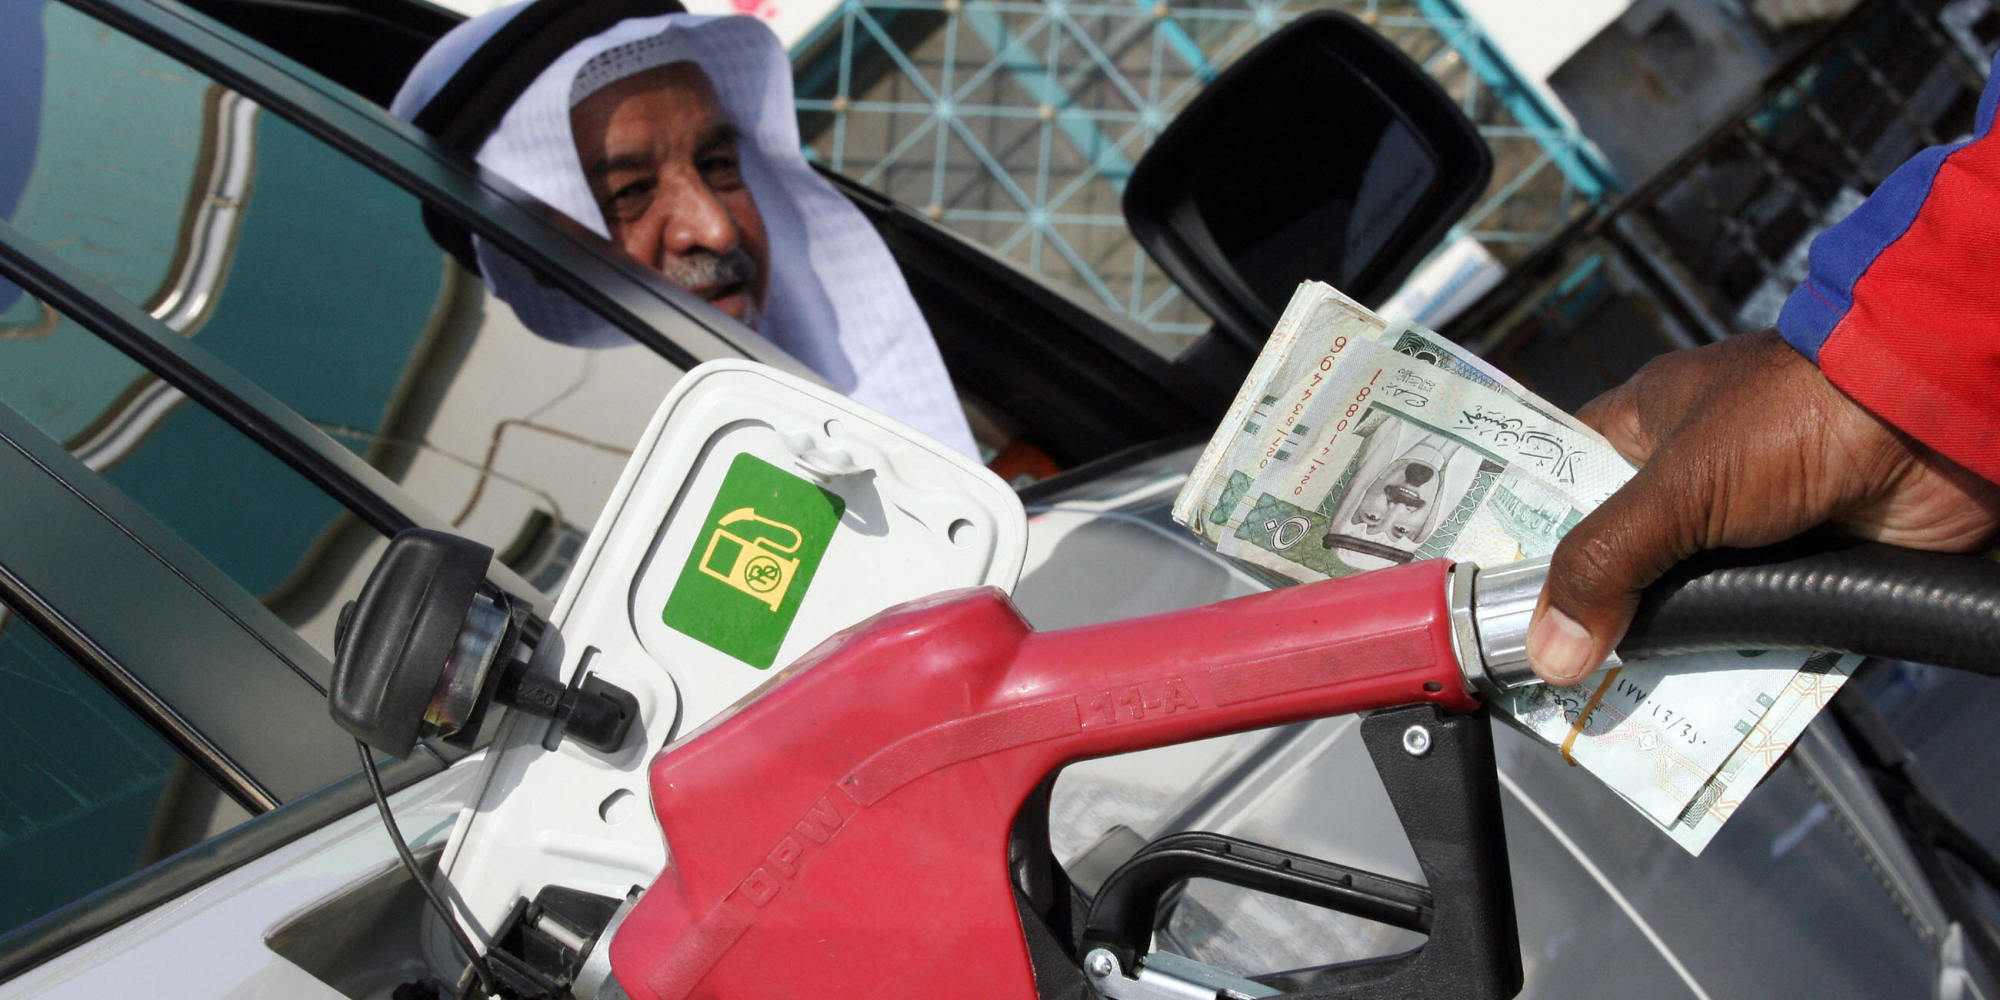 سعر البنزين الجديد لشهر سبتمبر 2021 في المملكة السعودية وتحديث شركة ارامكو للأسعار